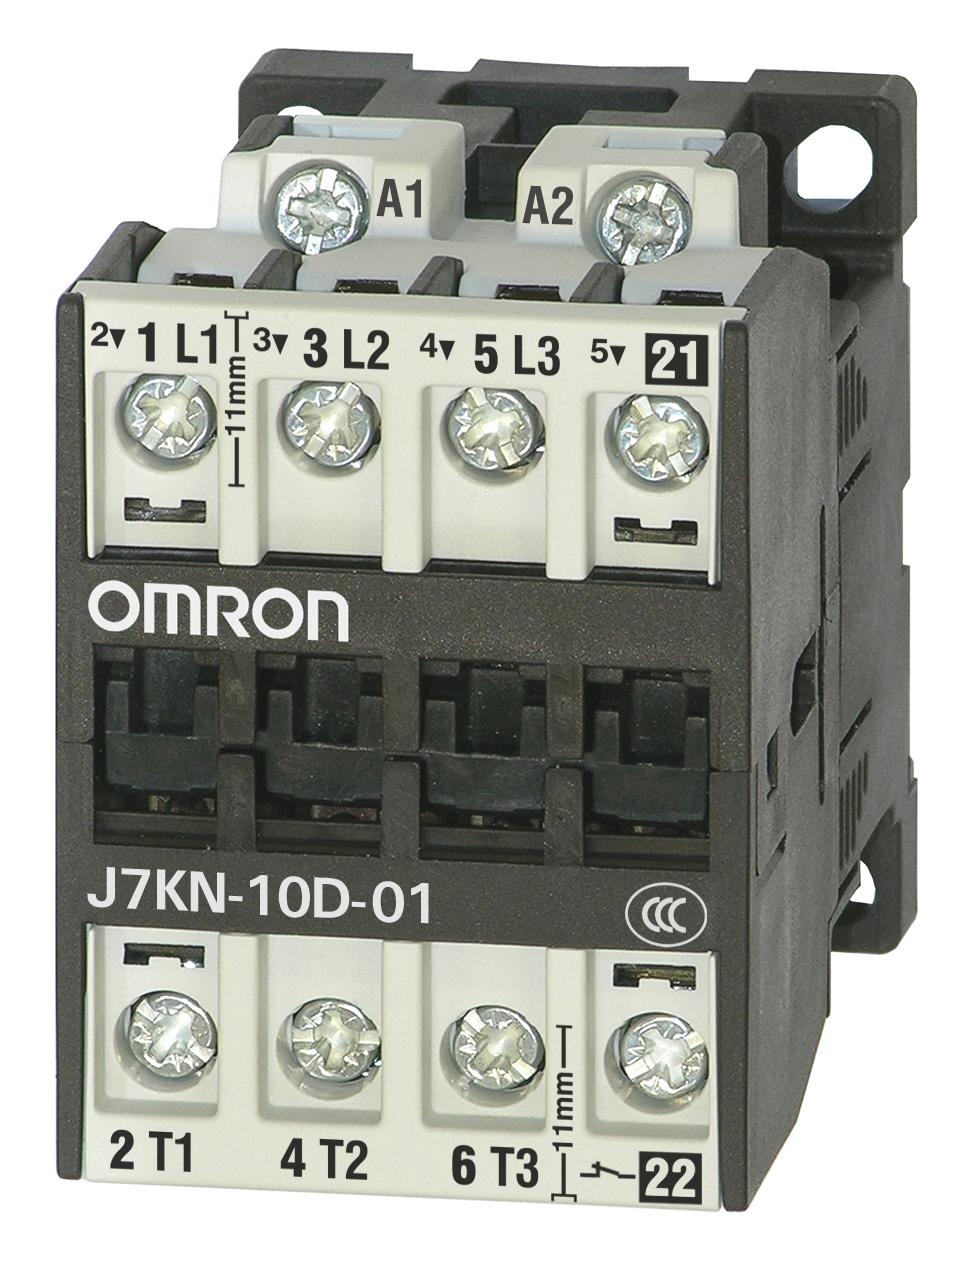 J7KN-10D-01 24D CONTACTORS RELAYS OMRON